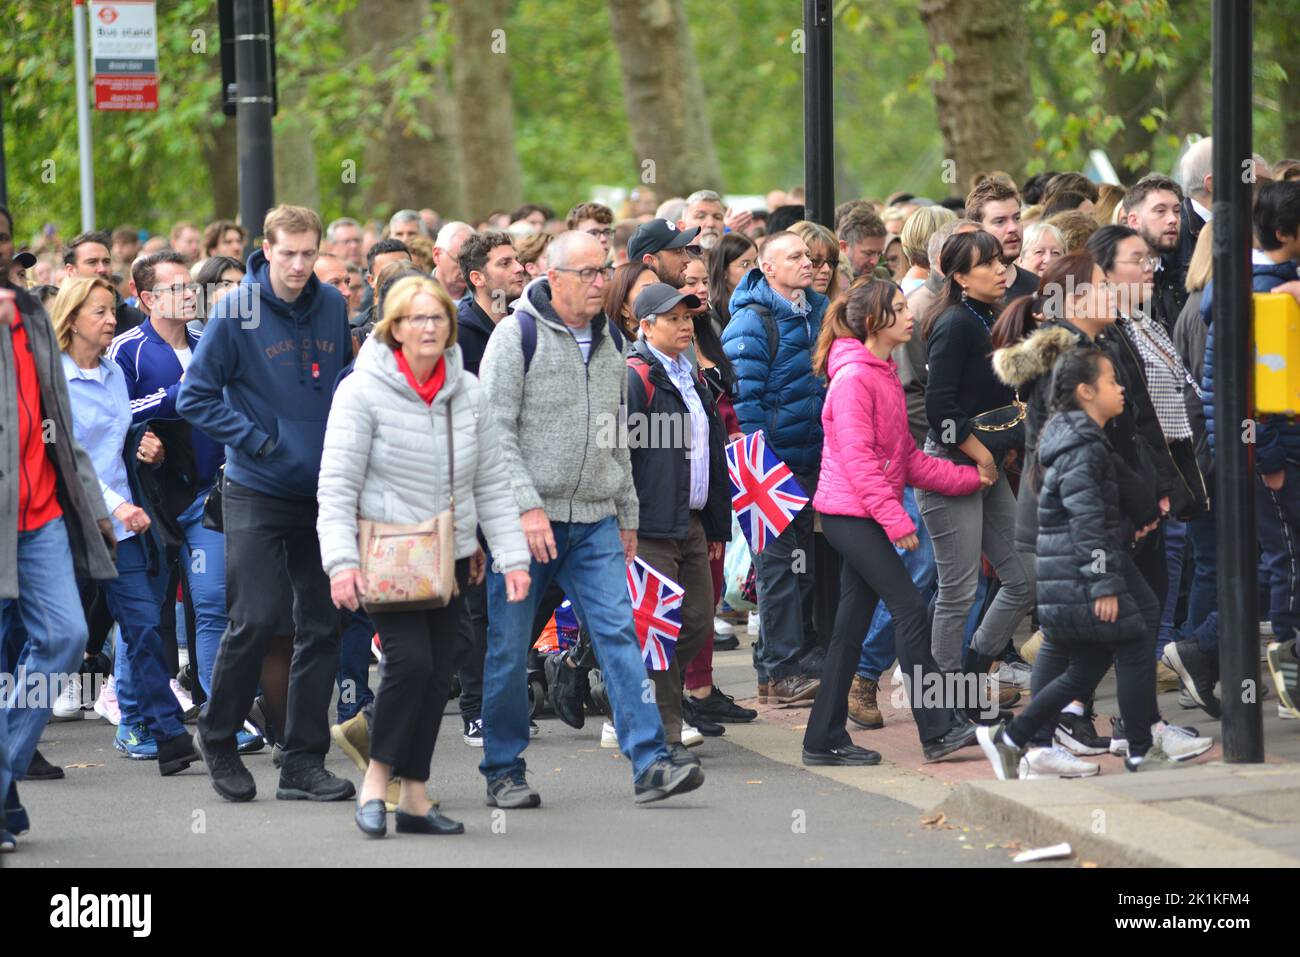 Funeral de Su Majestad la Reina Isabel II, Londres, Reino Unido, lunes 19th de septiembre de 2022. Multitud de personas que llegan a Hyde Park desde Park Lane para ver la proyección pública en pantallas grandes. Foto de stock